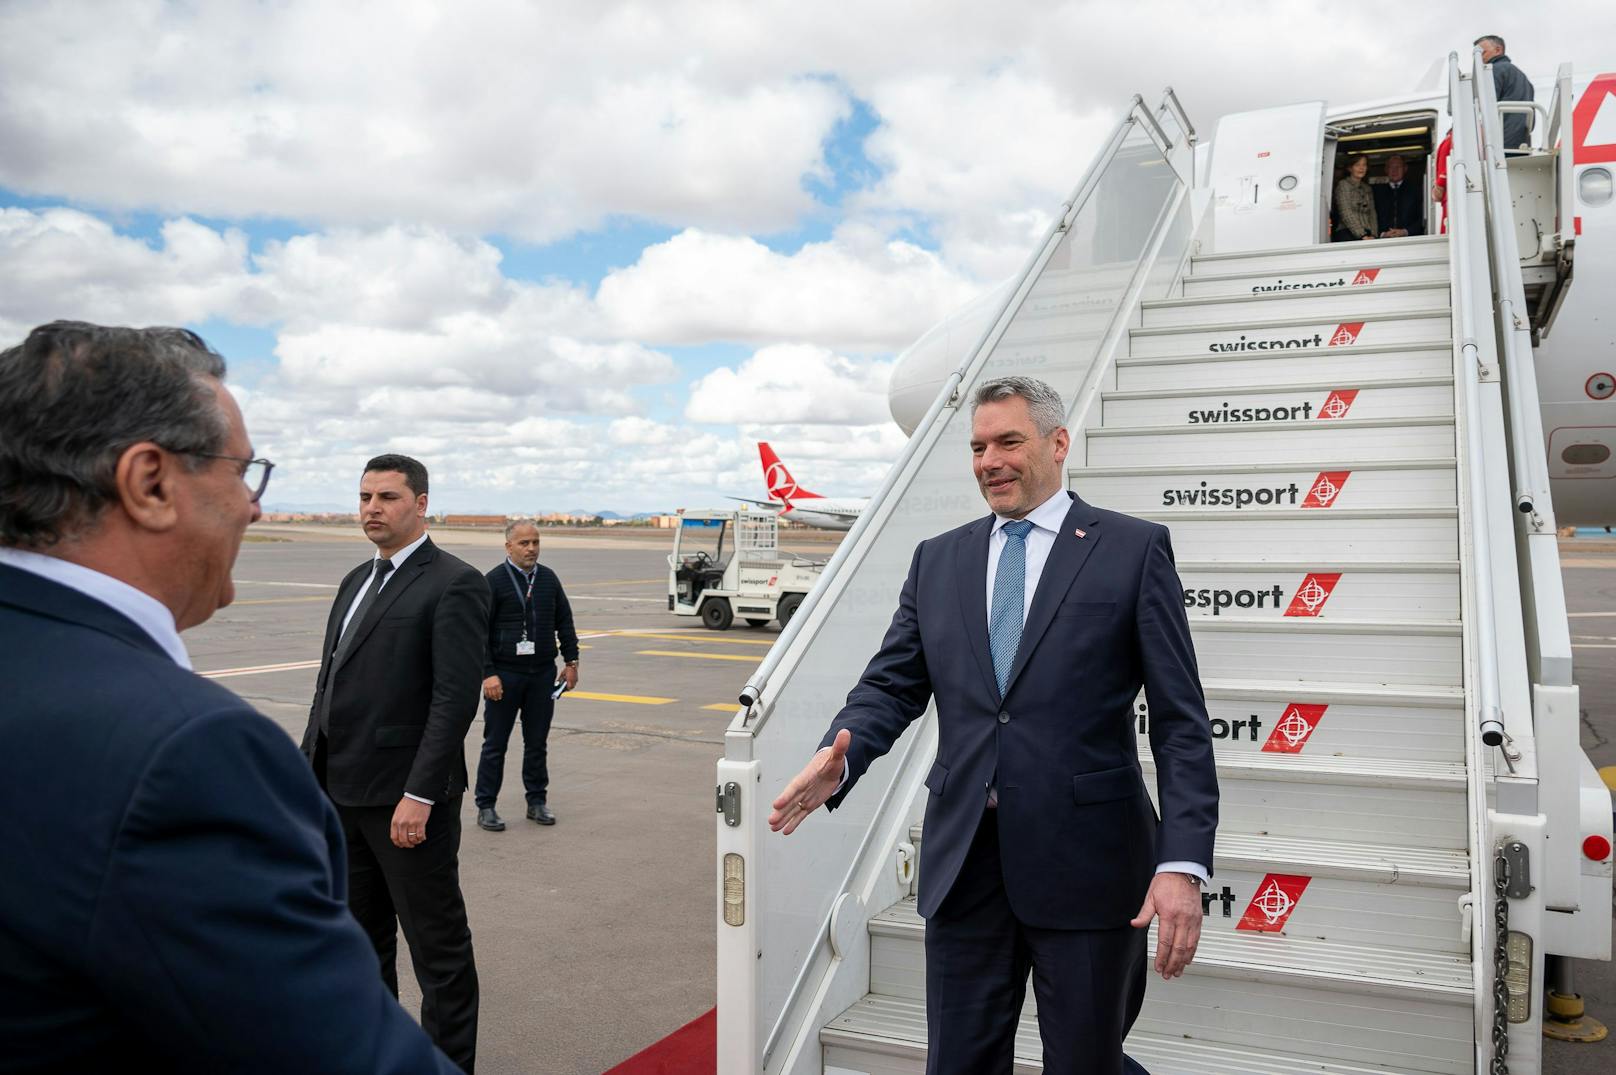 Bundeskanzler Karl Nehammer (ÖVP) reiste gemeinsam mit Innenminister Gerhard Karner am Montag nach Marokko.